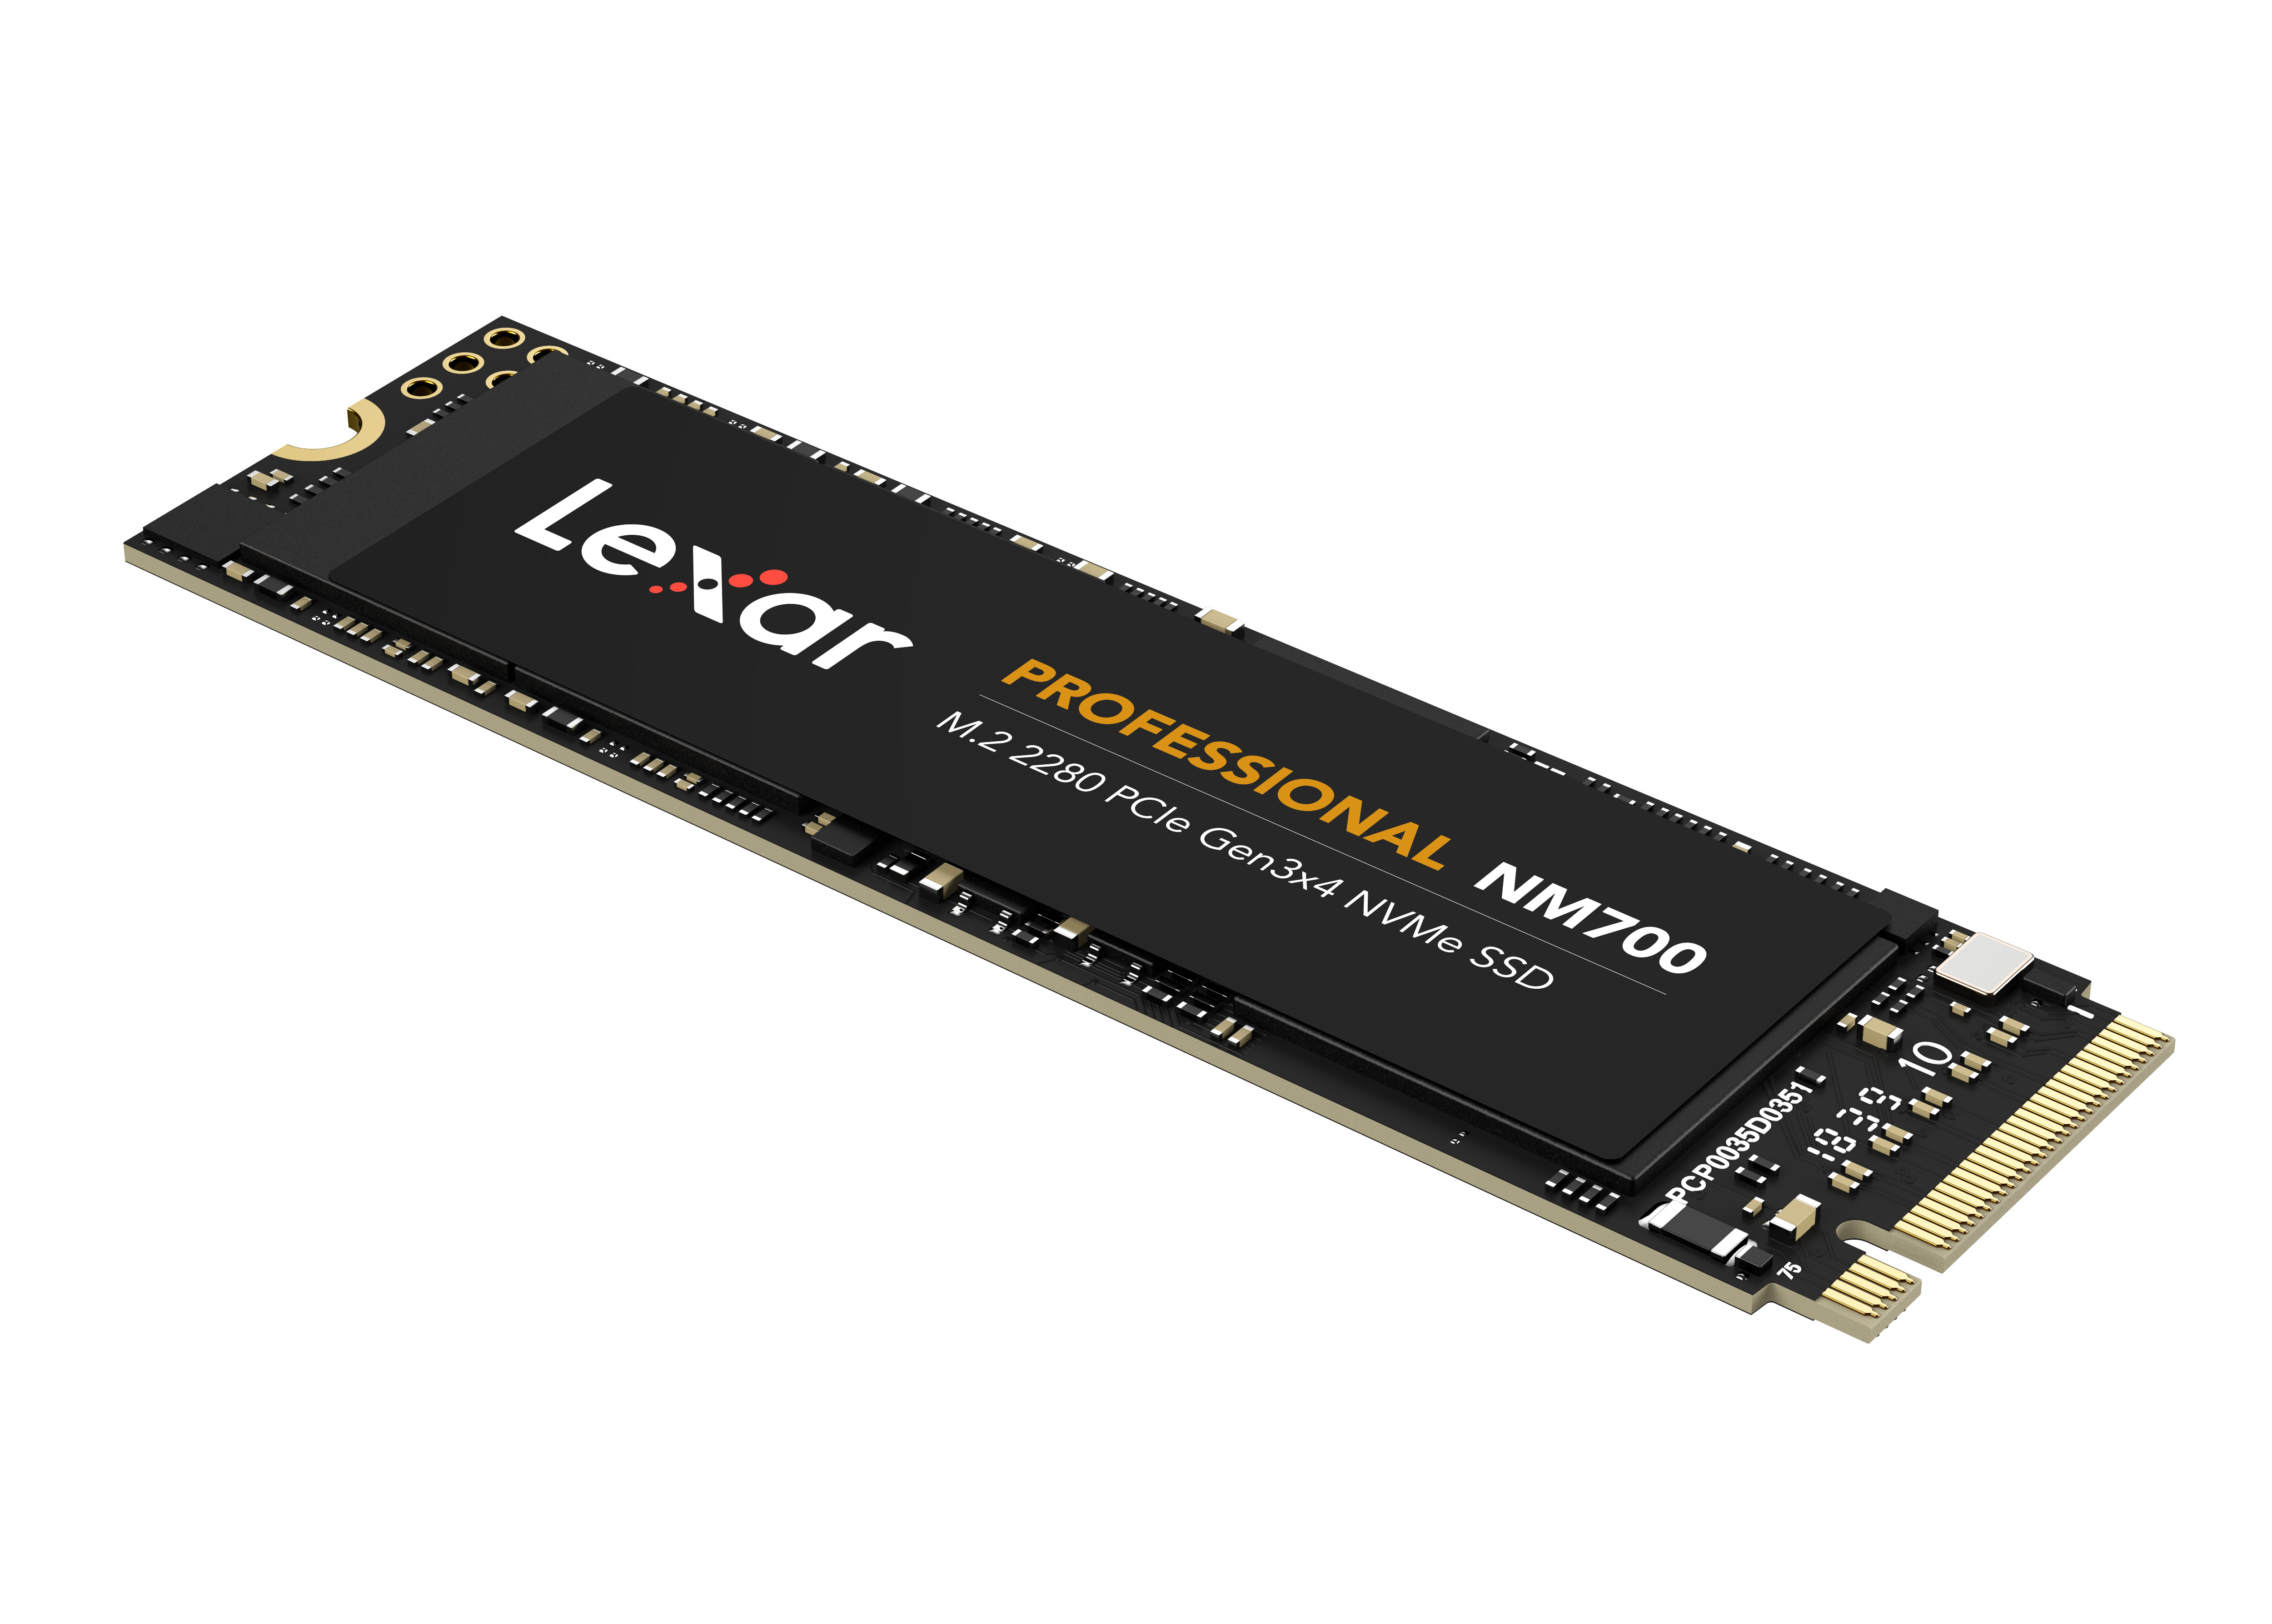 Ổ cứng SSD Lexar Professional NM700 256GB PCIe Gen3x4 M.2 2280 NVMe 3500MB/s - Hàng Chính Hãng